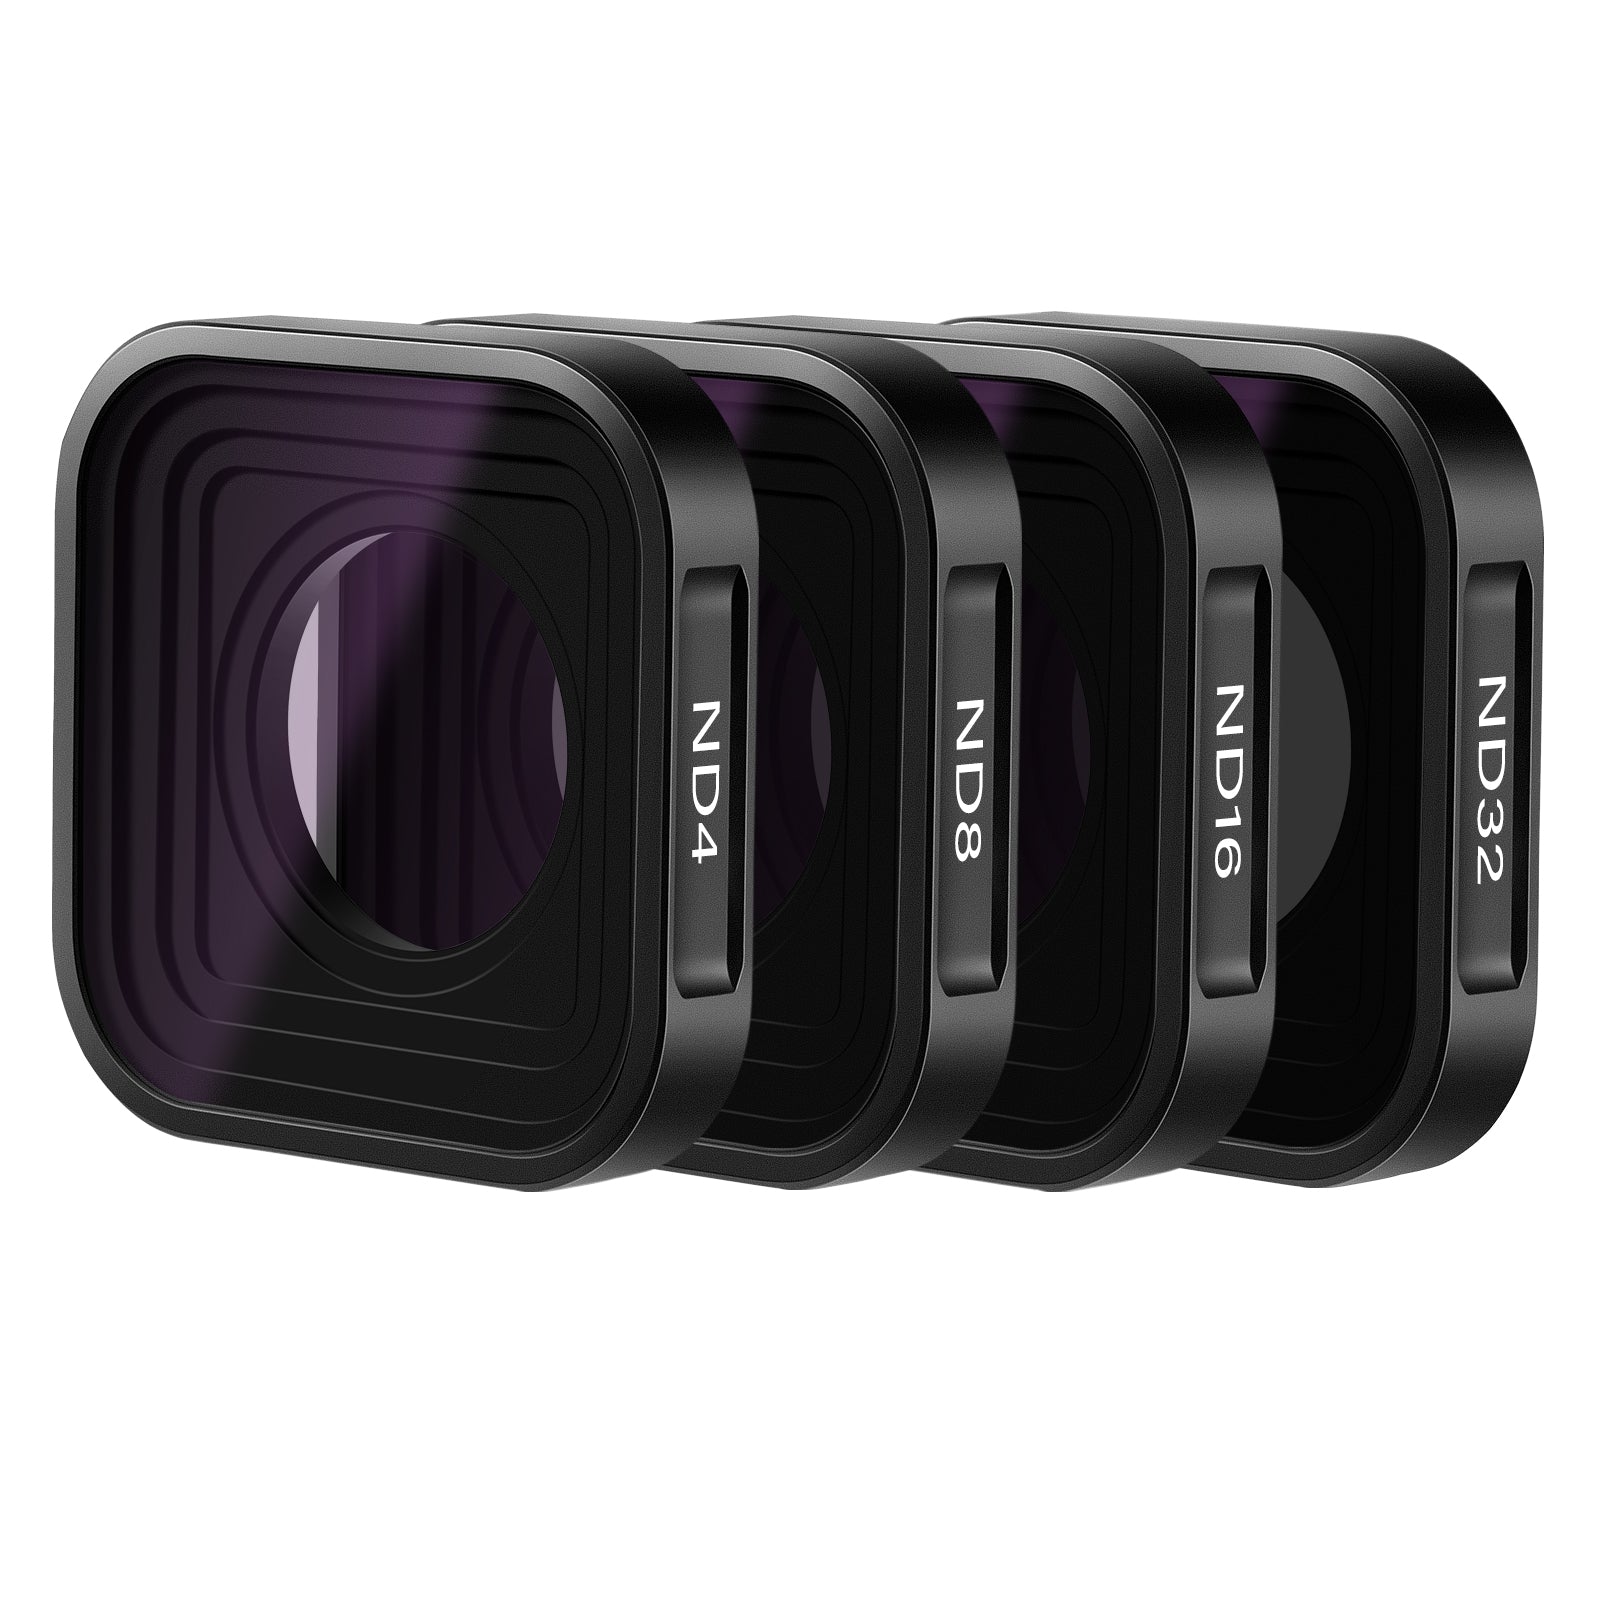 NEEWER 58mm Lens Filter Kit For GoPro Hero 8 7 6 5 - NEEWER